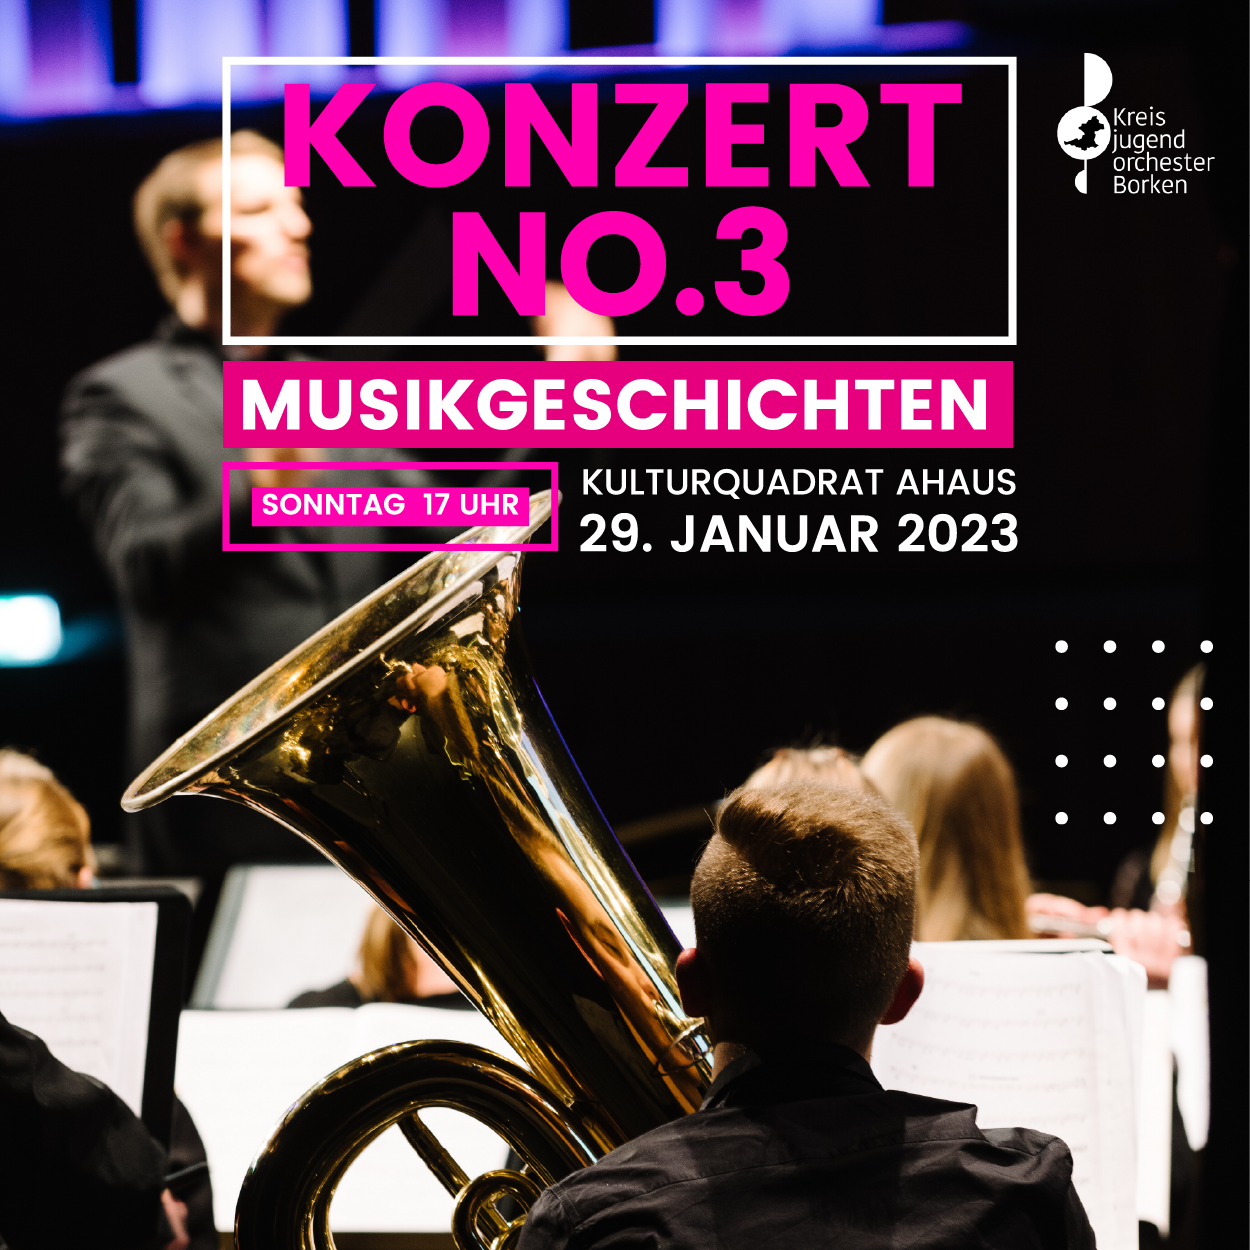 Konzert No. 3 - Musikgeschichten Kreisjugendorchester Borken Konzert